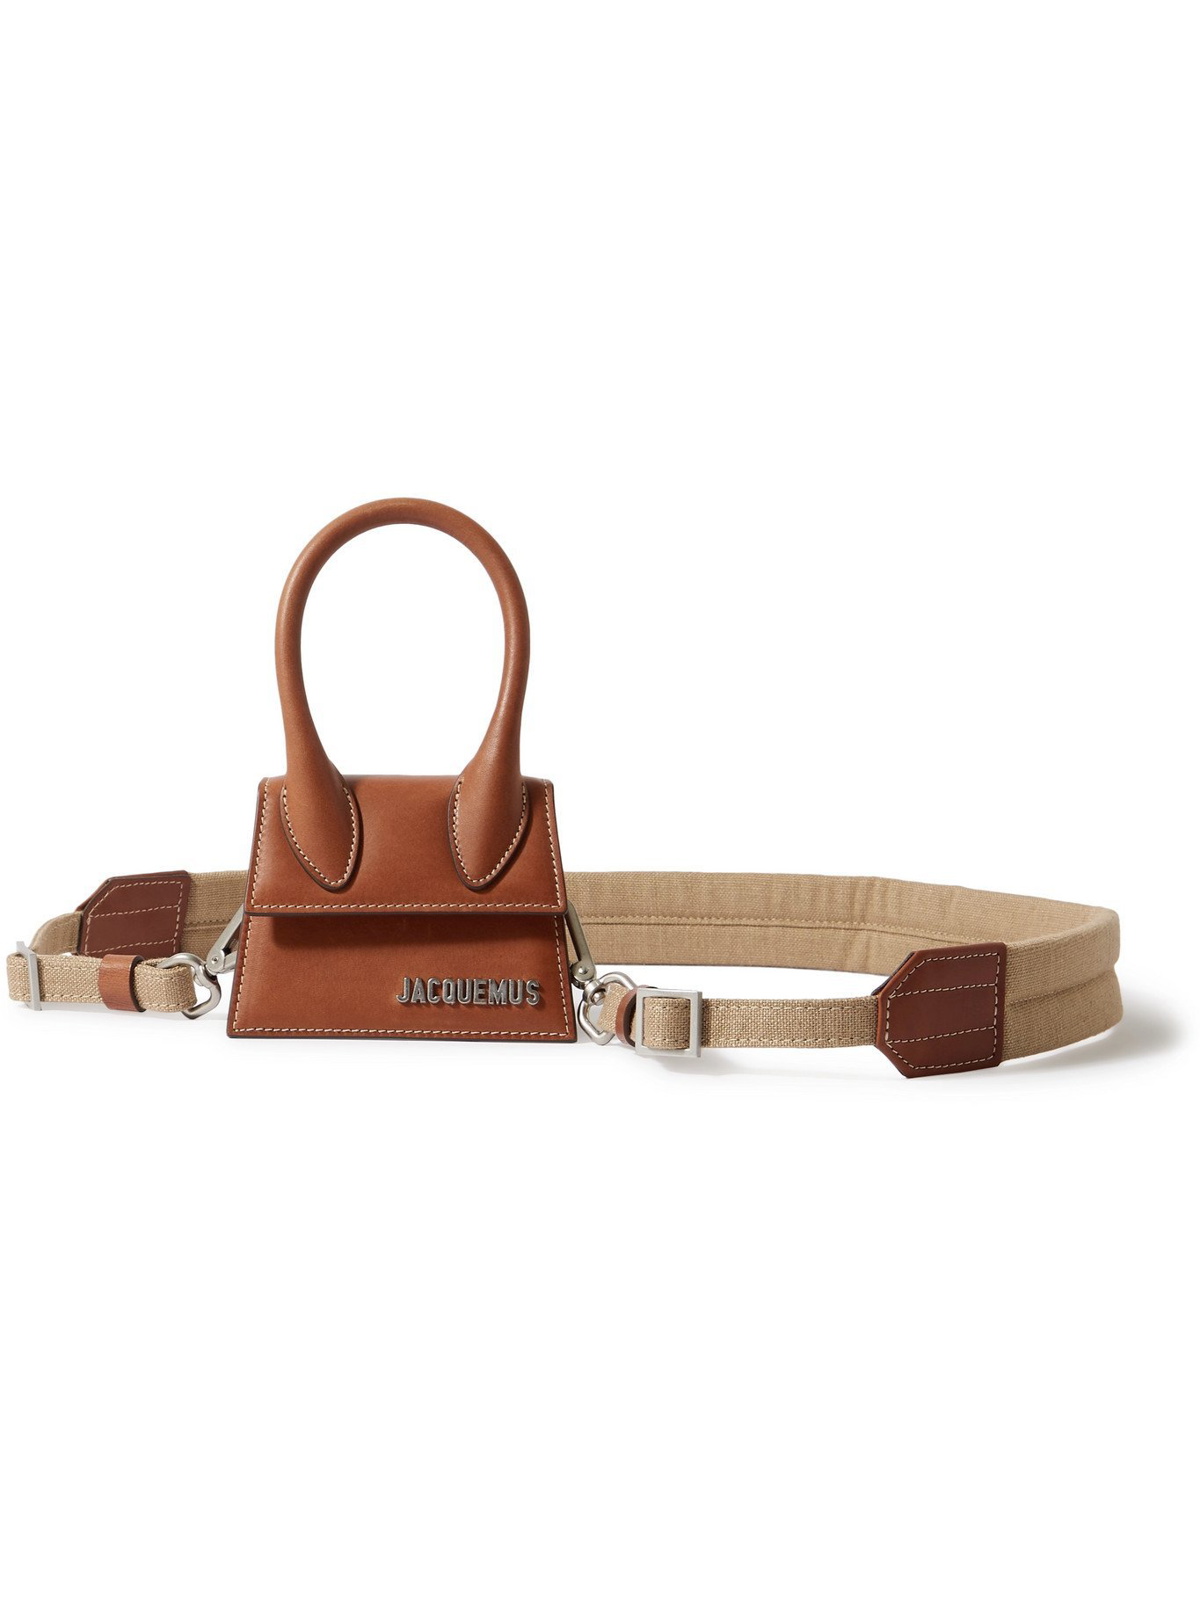 JACQUEMUS - Le Chiquito Logo-Appliquéd Leather Messenger Bag - Brown ...